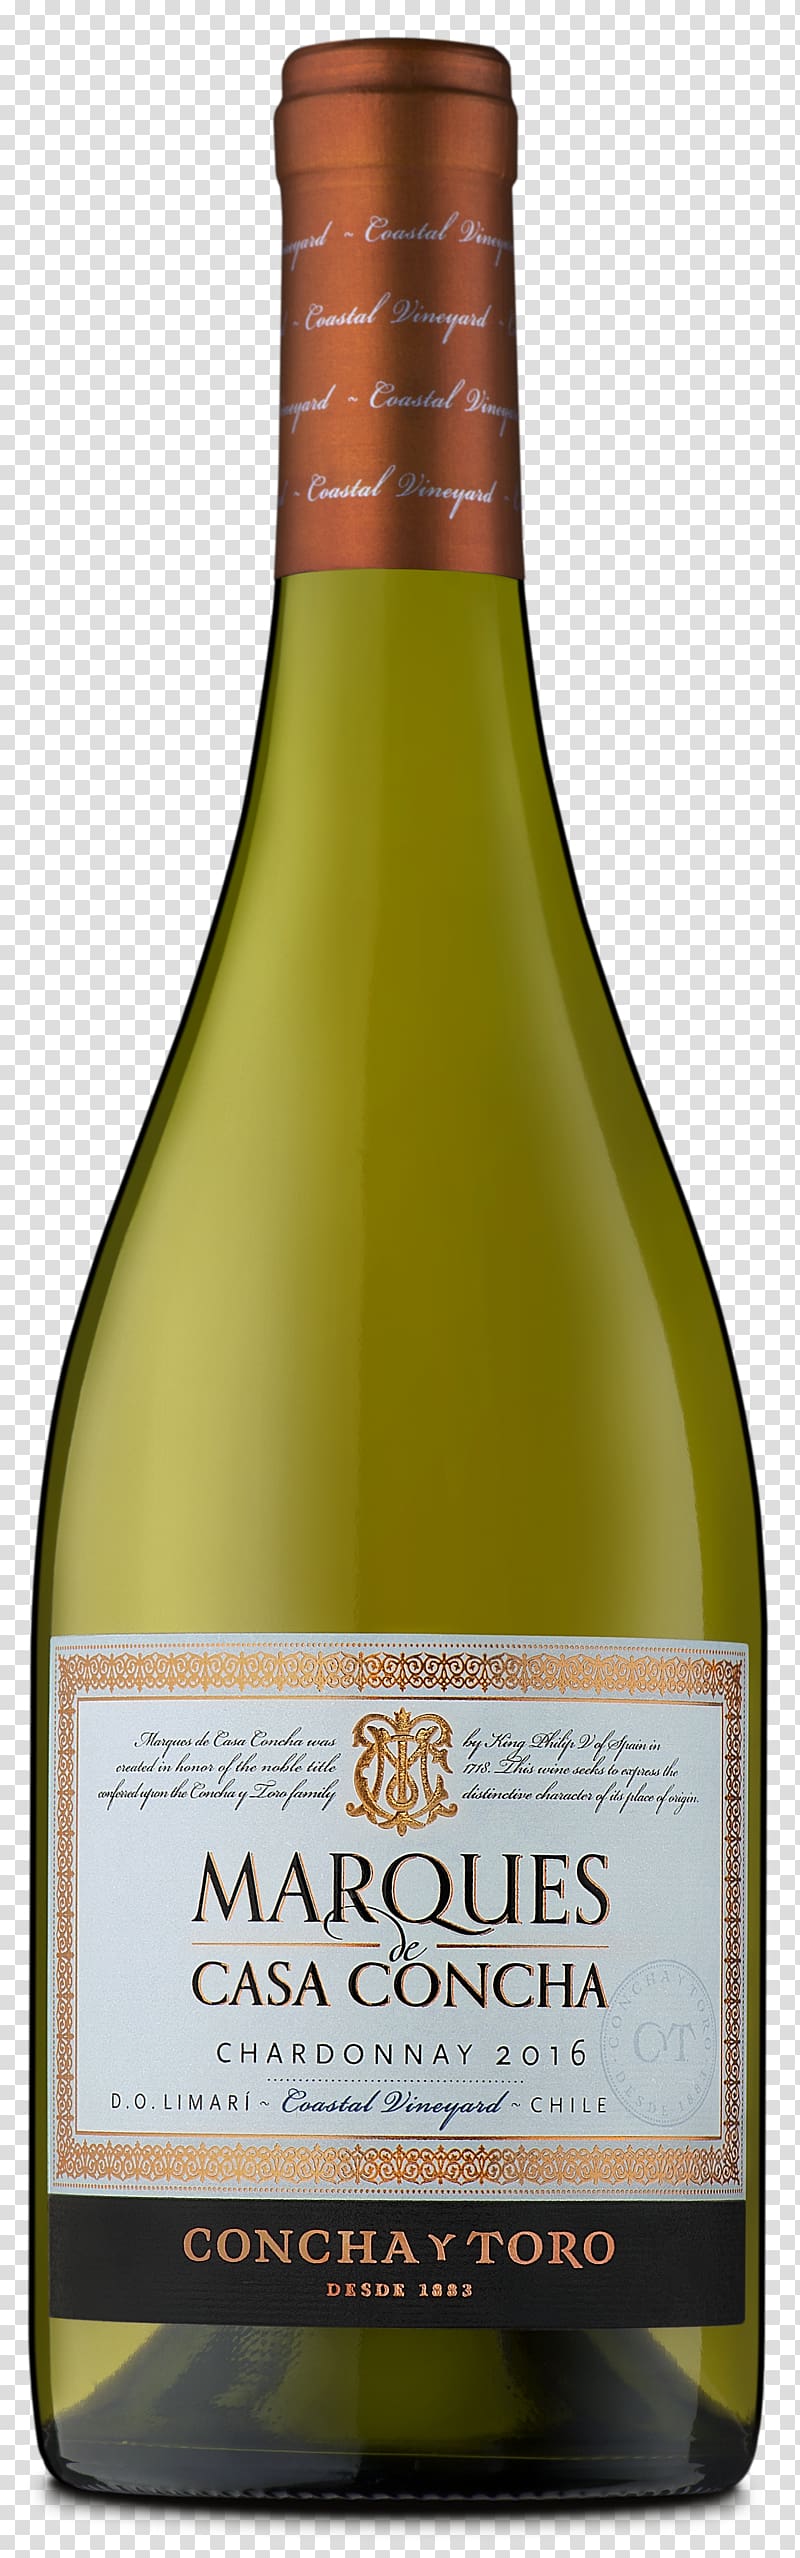 Liqueur White wine Chardonnay Sauvignon blanc, wine transparent background PNG clipart